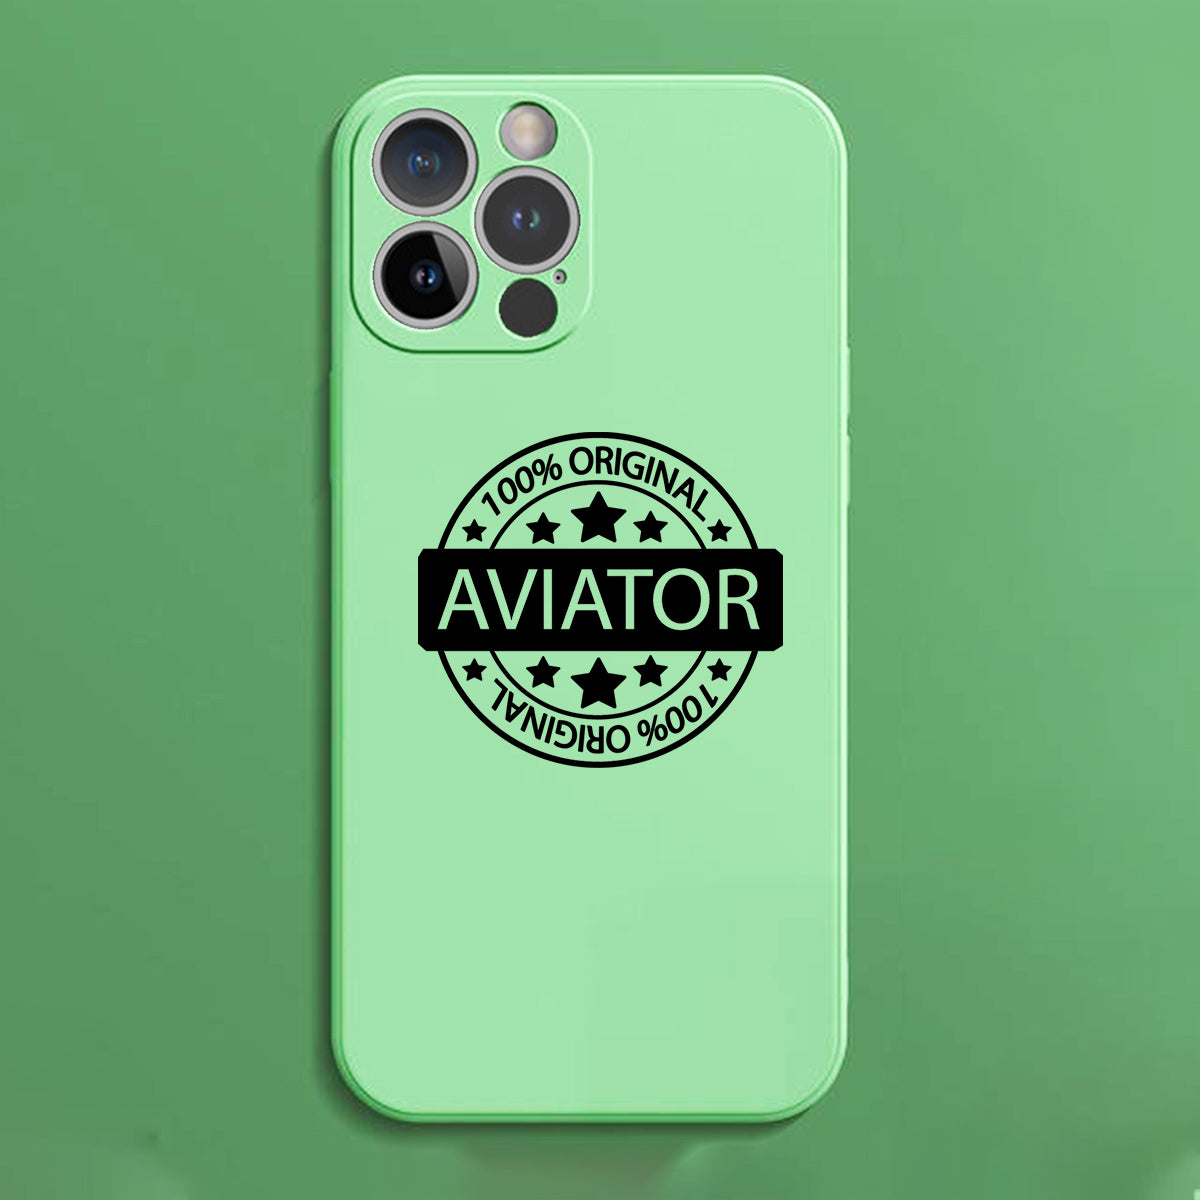 100 Original Aviator Designed Soft Silicone iPhone Cases